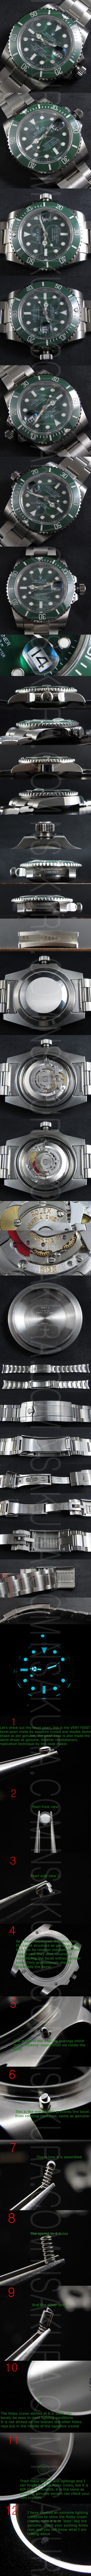 レプリカ時計ロレックス サブマリーナ Ref.116610LV Asian 3135搭載 ハイエンドモデル - ウインドウを閉じる